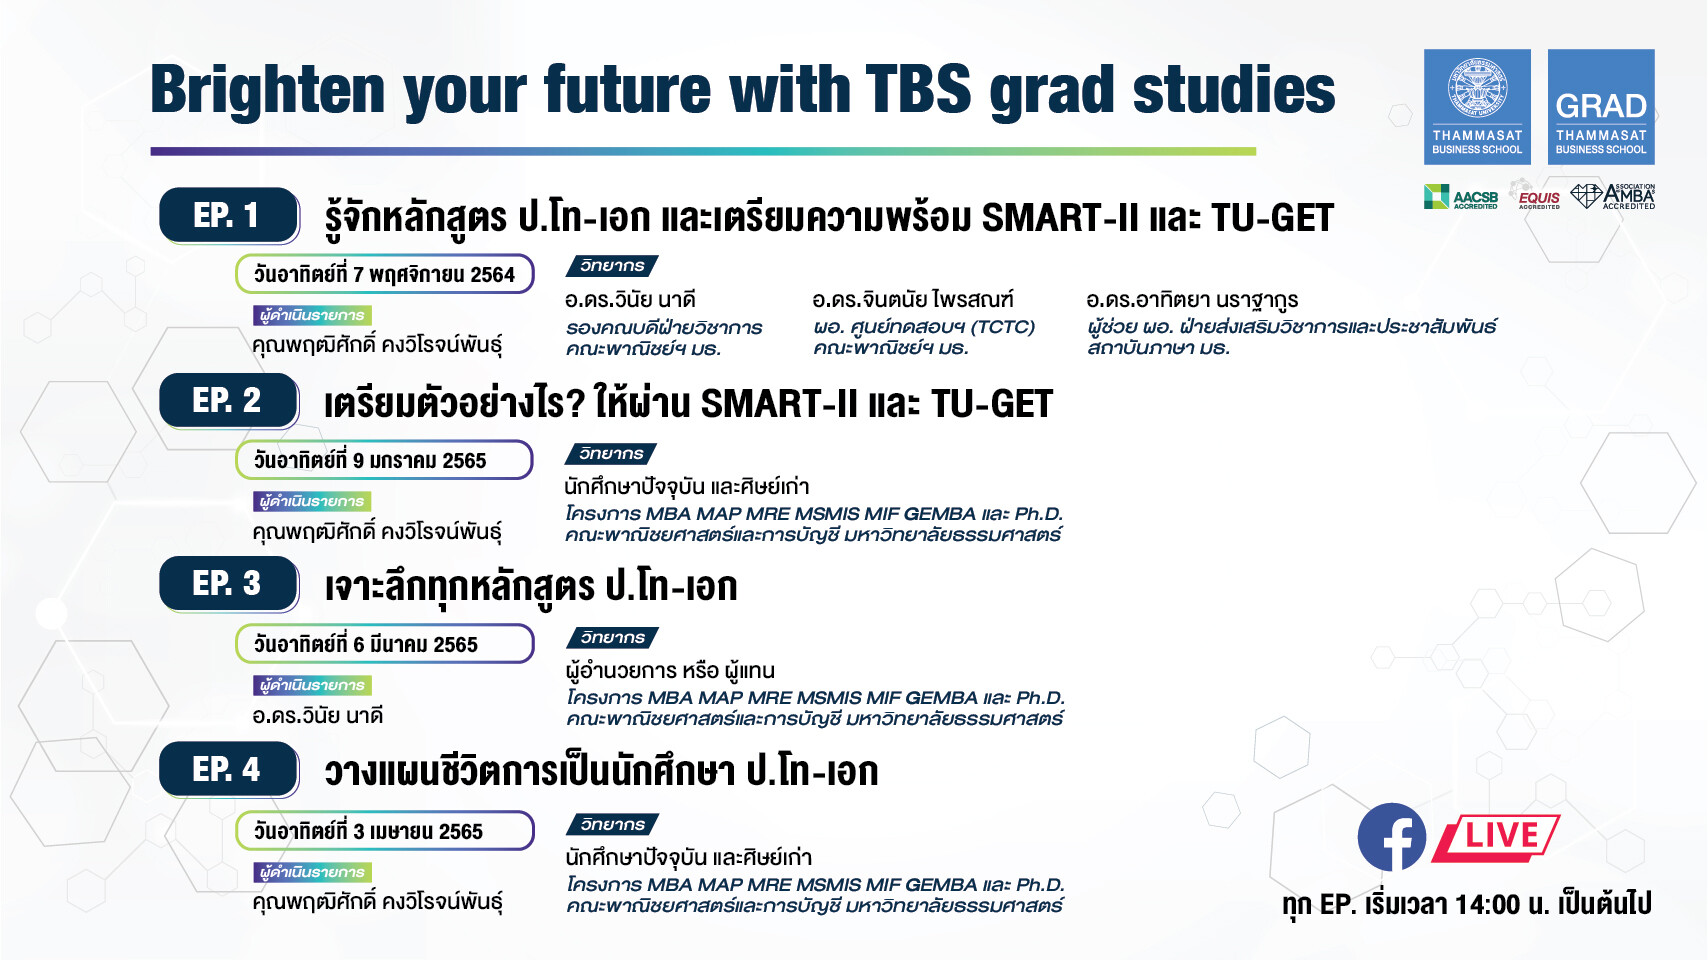 ขอเชิญเข้าร่วมกิจกรรม Brighten your future with TBS grad studies